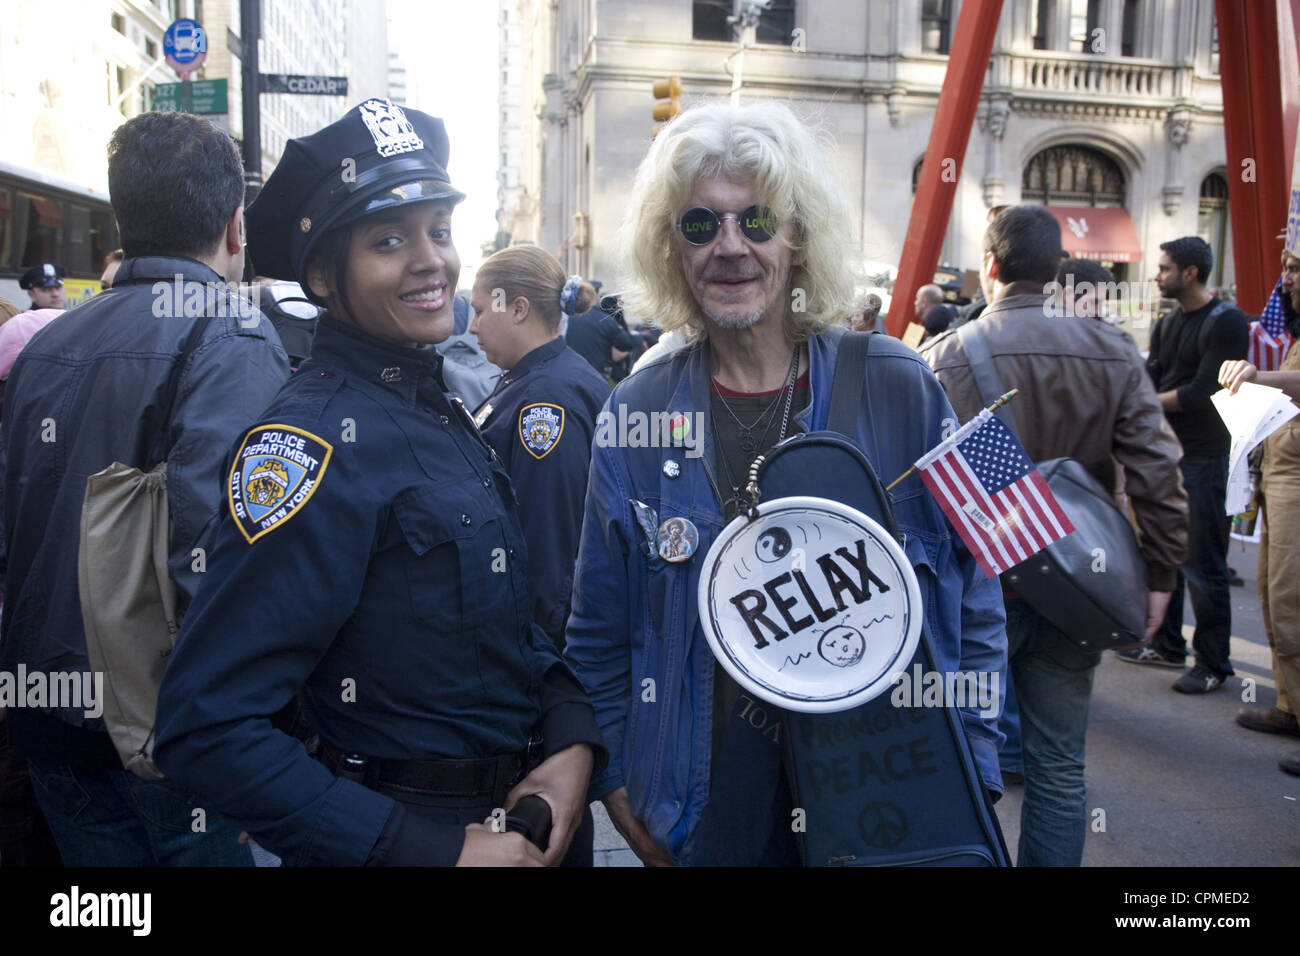 Occupare Wall Street demonstrator si distingue per una foto con un NYPD officer a Zuccotti Park, aka Liberty Square a Manhattan. Foto Stock